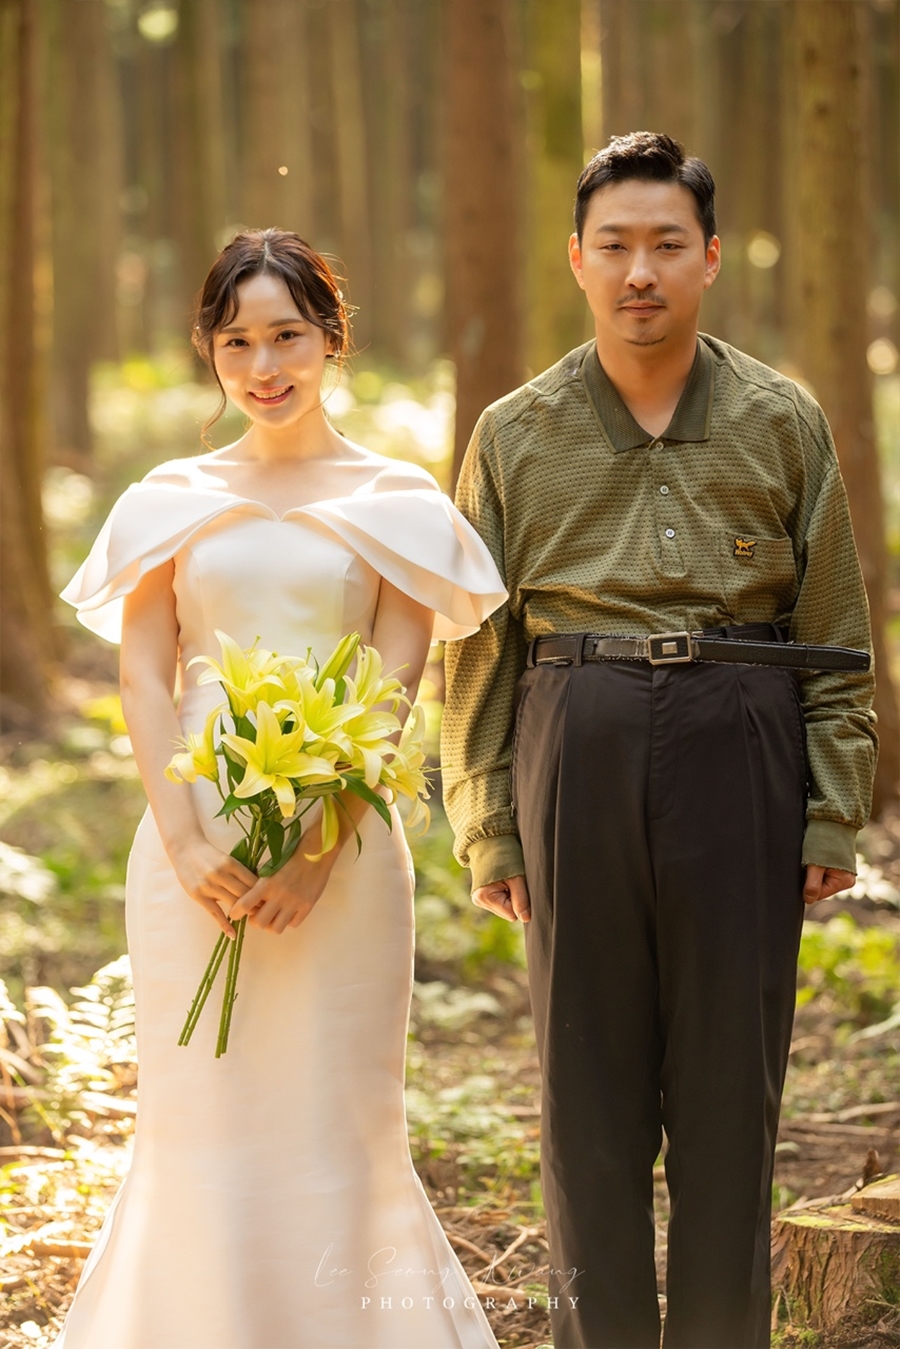 개그맨 정찬민, 4살 연하 배우 임수현과 4월 2일 결혼